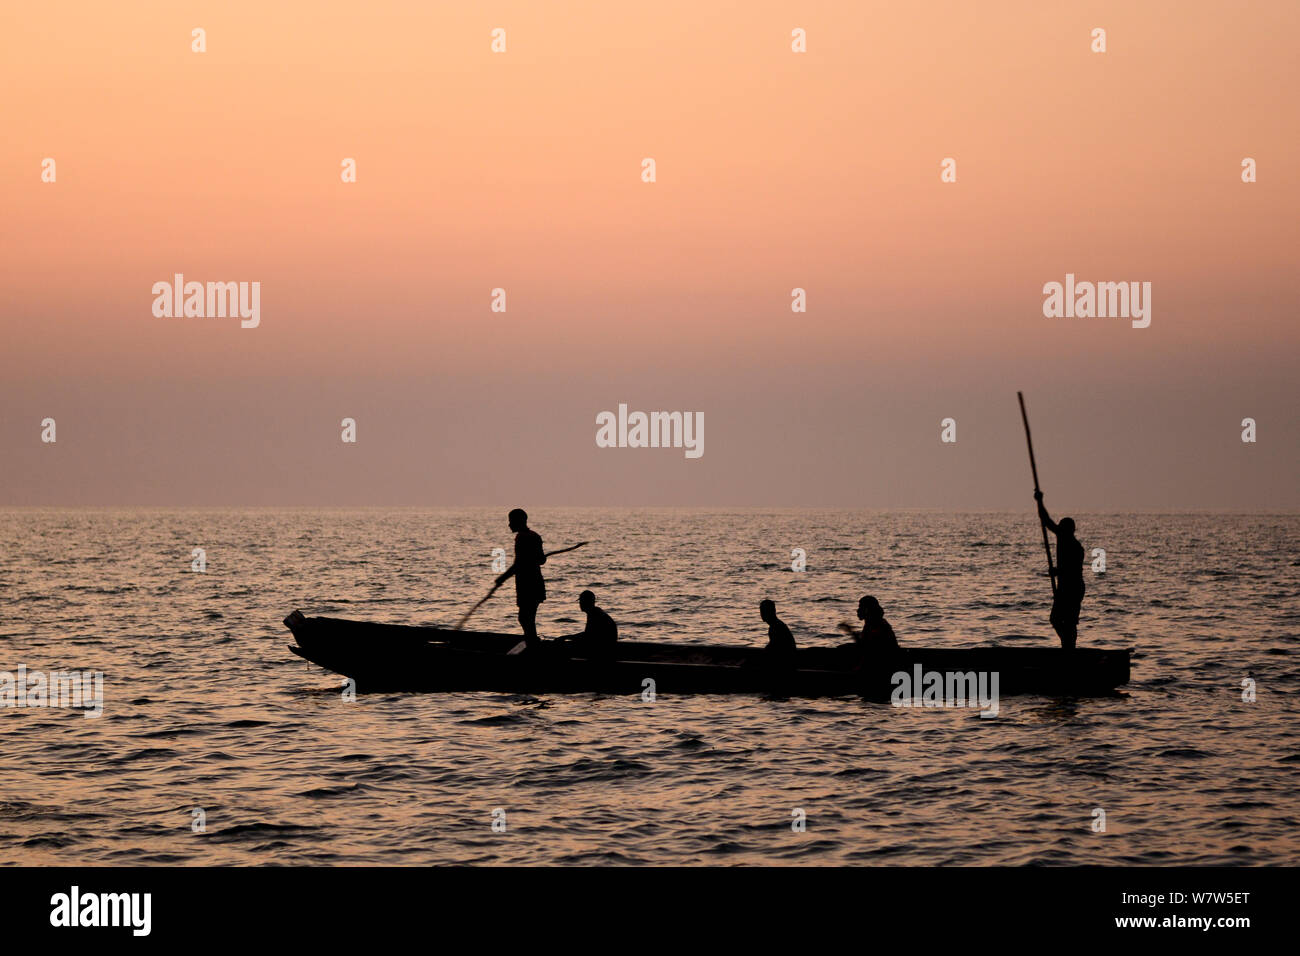 Los pescadores en bote al atardecer, la isla de Orango, Guinea-Bissau. De diciembre de 2013. Foto de stock